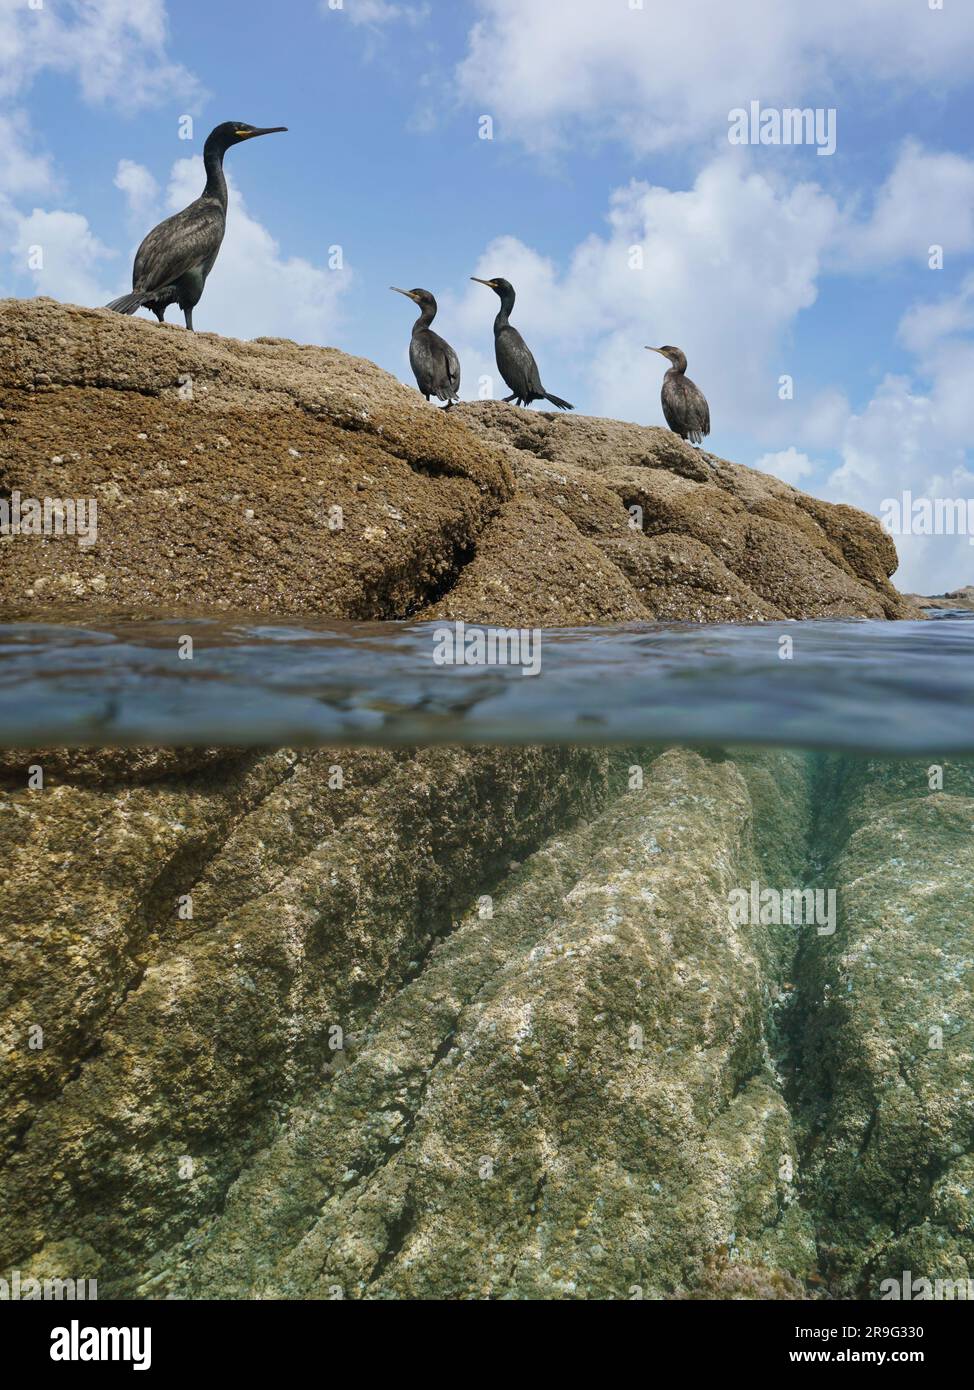 Cormorant oiseaux debout sur un rocher sur la rive de la mer, vue sur et sous la surface de l'eau, océan Atlantique, Espagne, Galice Banque D'Images